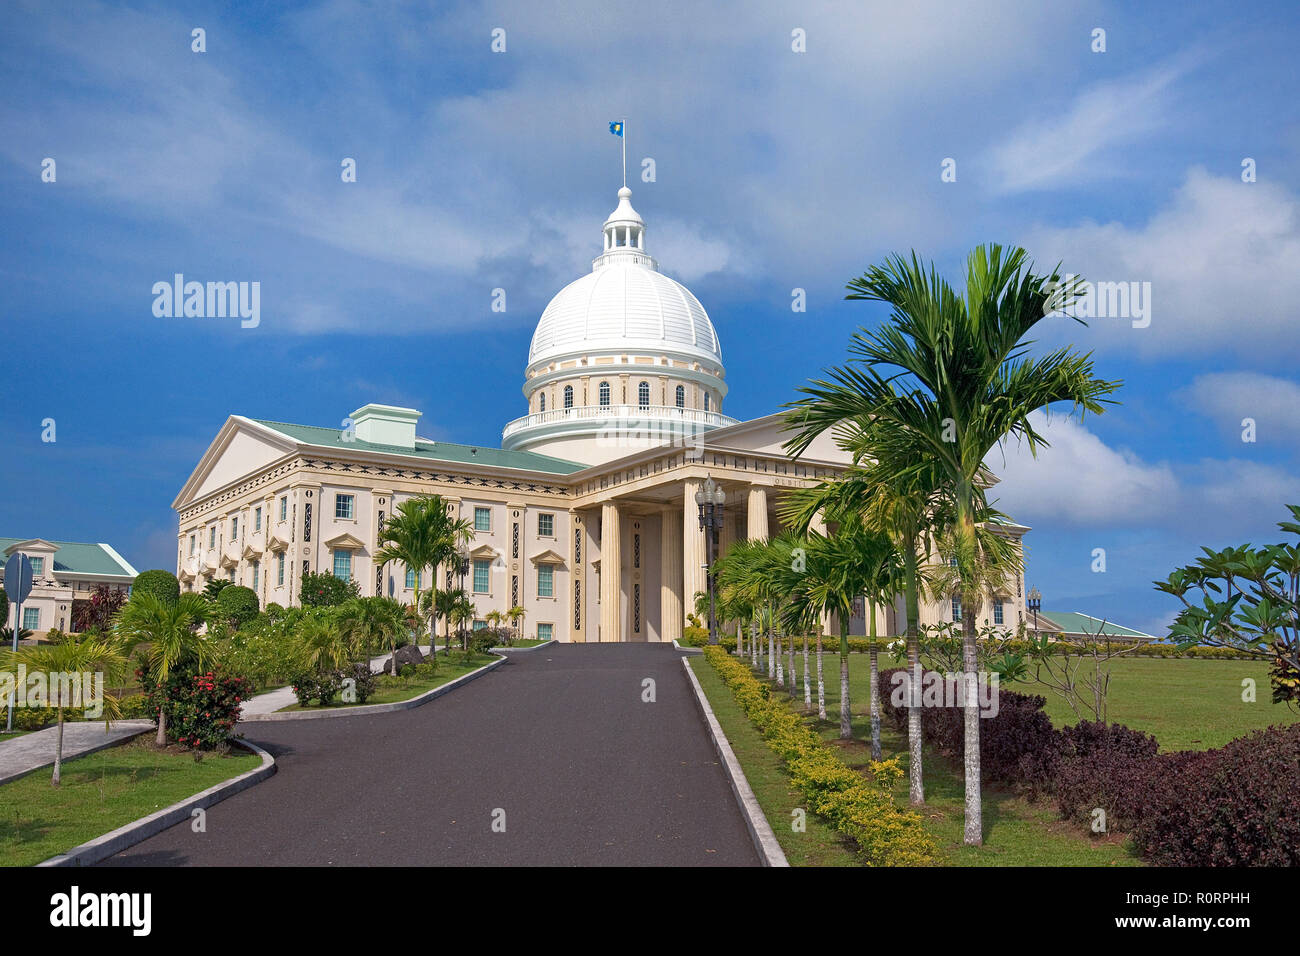 Capitolio, en Ngerulmud Regierungsgebäude, Palau, Mikronesien | El Capitolio, sede del gobierno, Ngerulmud, Palau, Micronesia Foto de stock